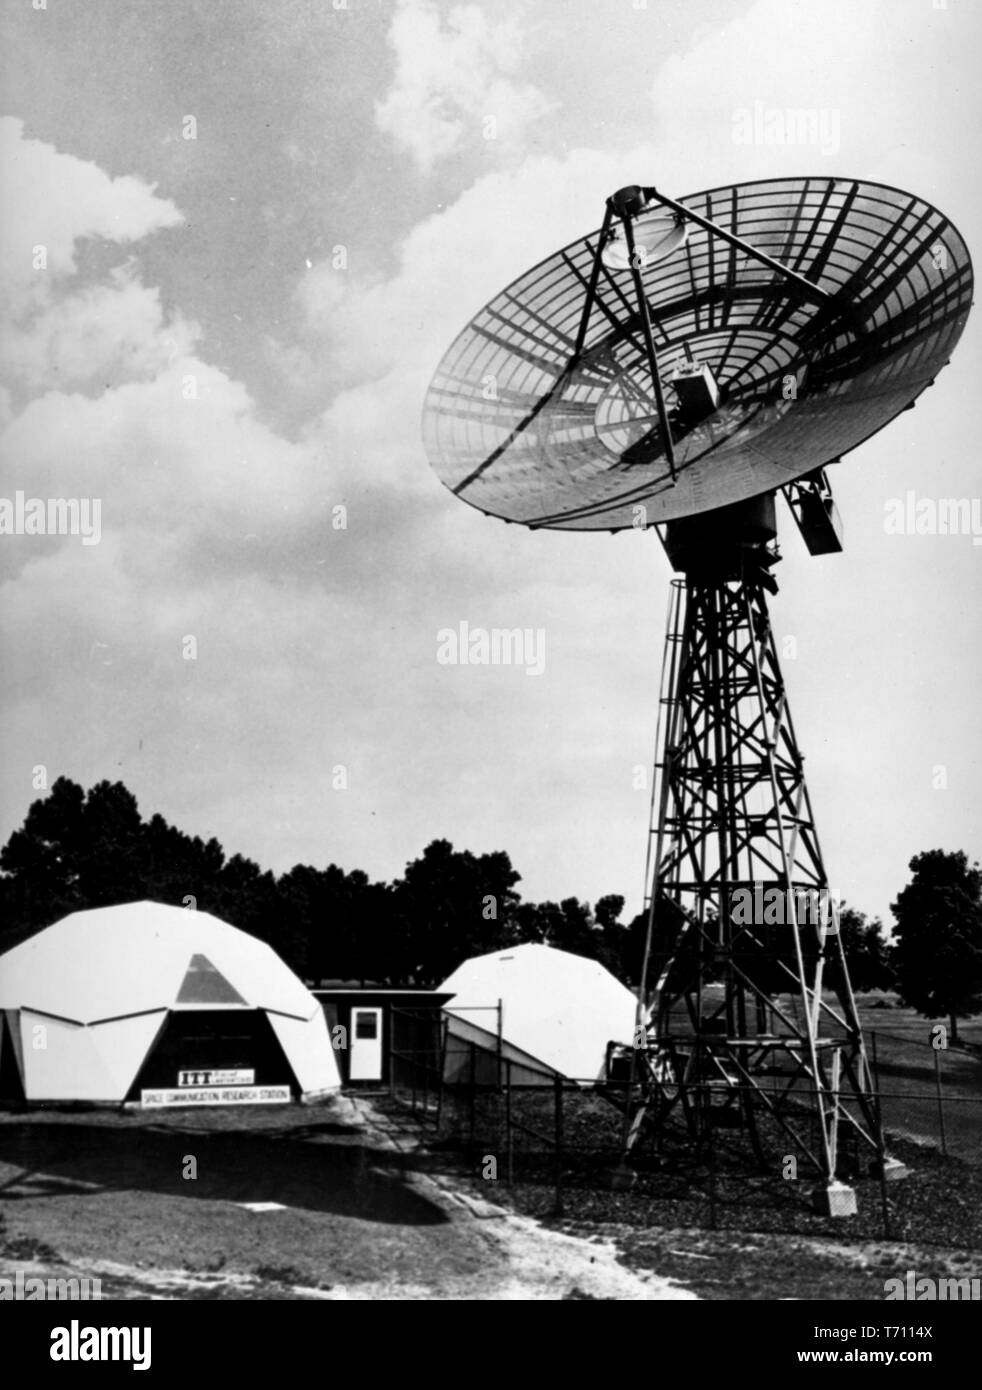 Téléphone et Télégraphe International Laboratoires fédéraux antenne parabolique de 30 pieds, agissant comme un espace relais projet terminal de communication, Novembre 11, 1962. Droit avec la permission de la National Aeronautics and Space Administration (NASA). () Banque D'Images